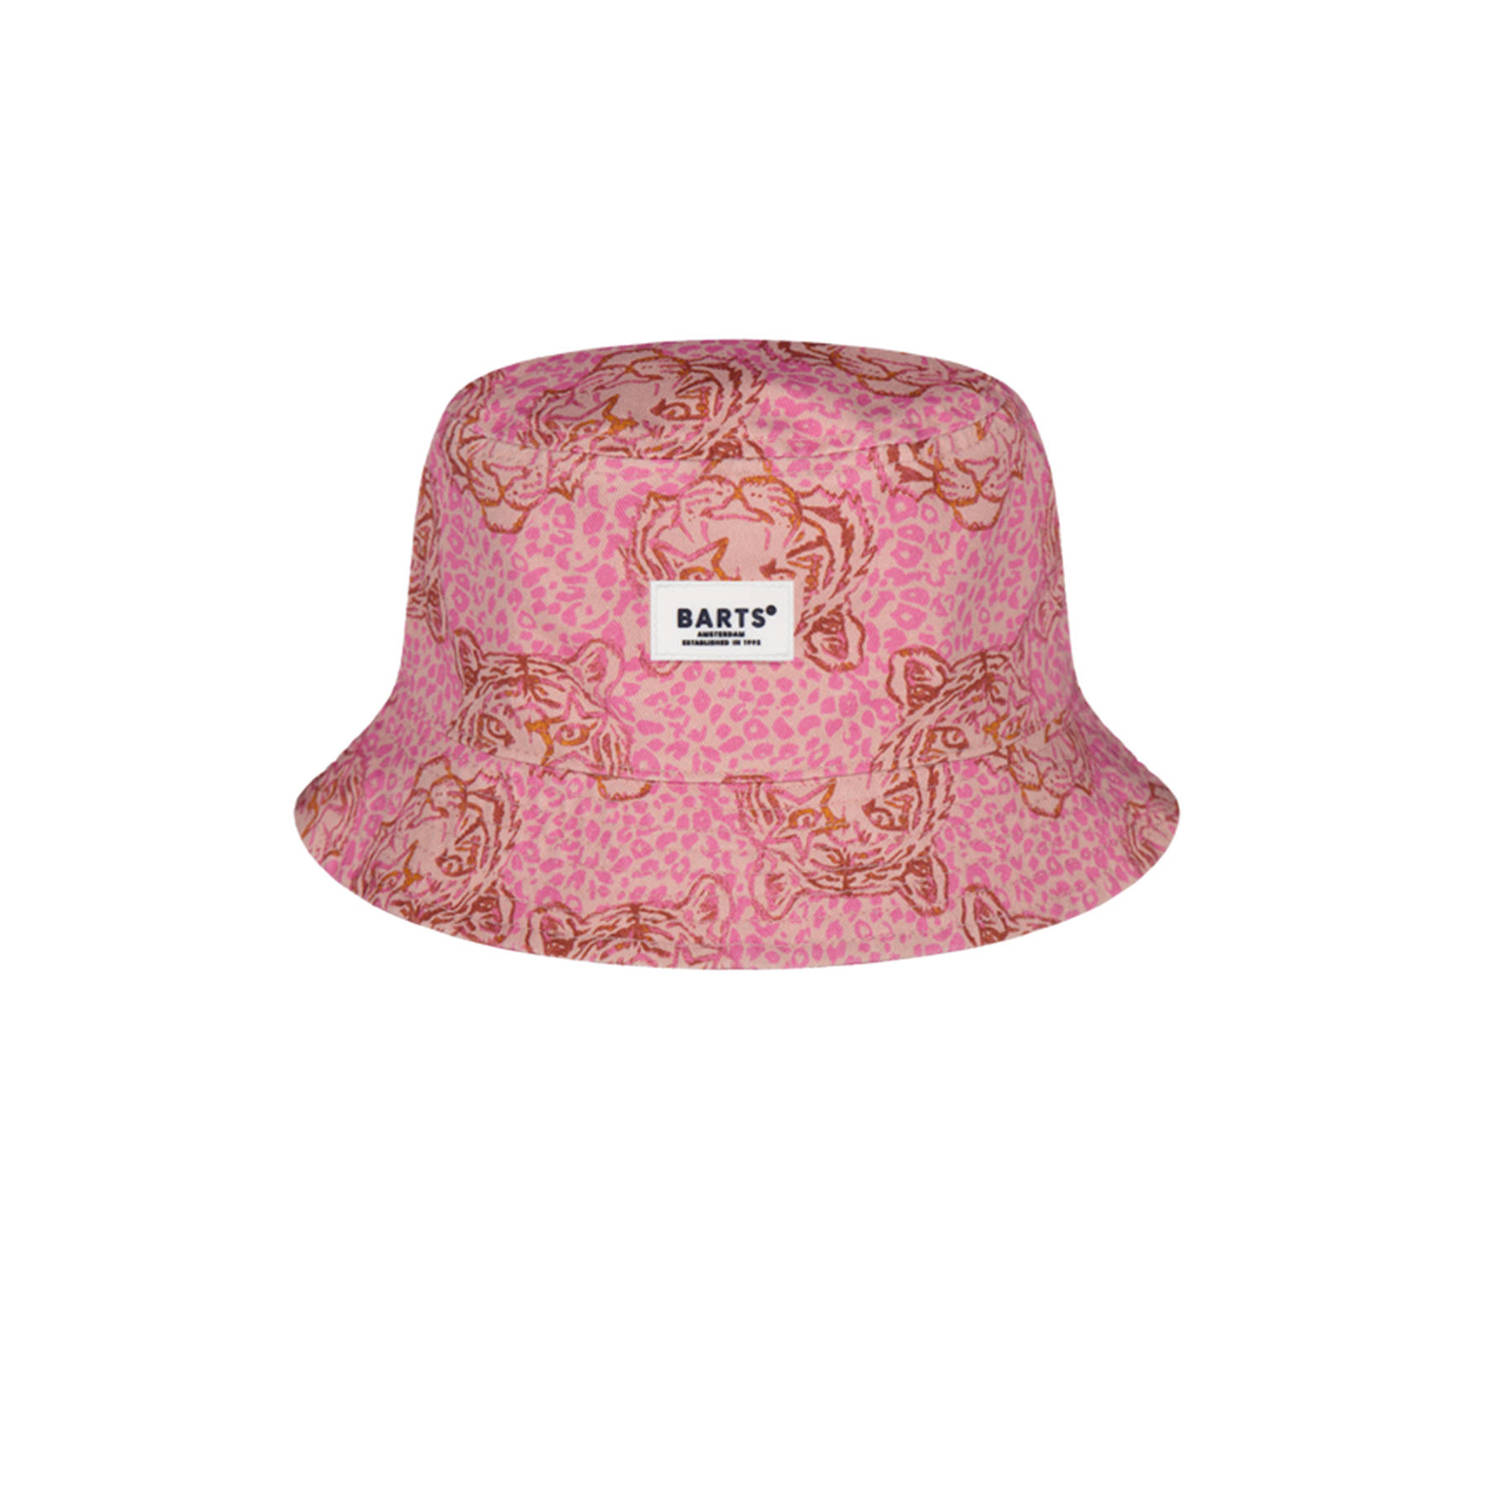 Barts bucket hat met all over print roze lichtbruin